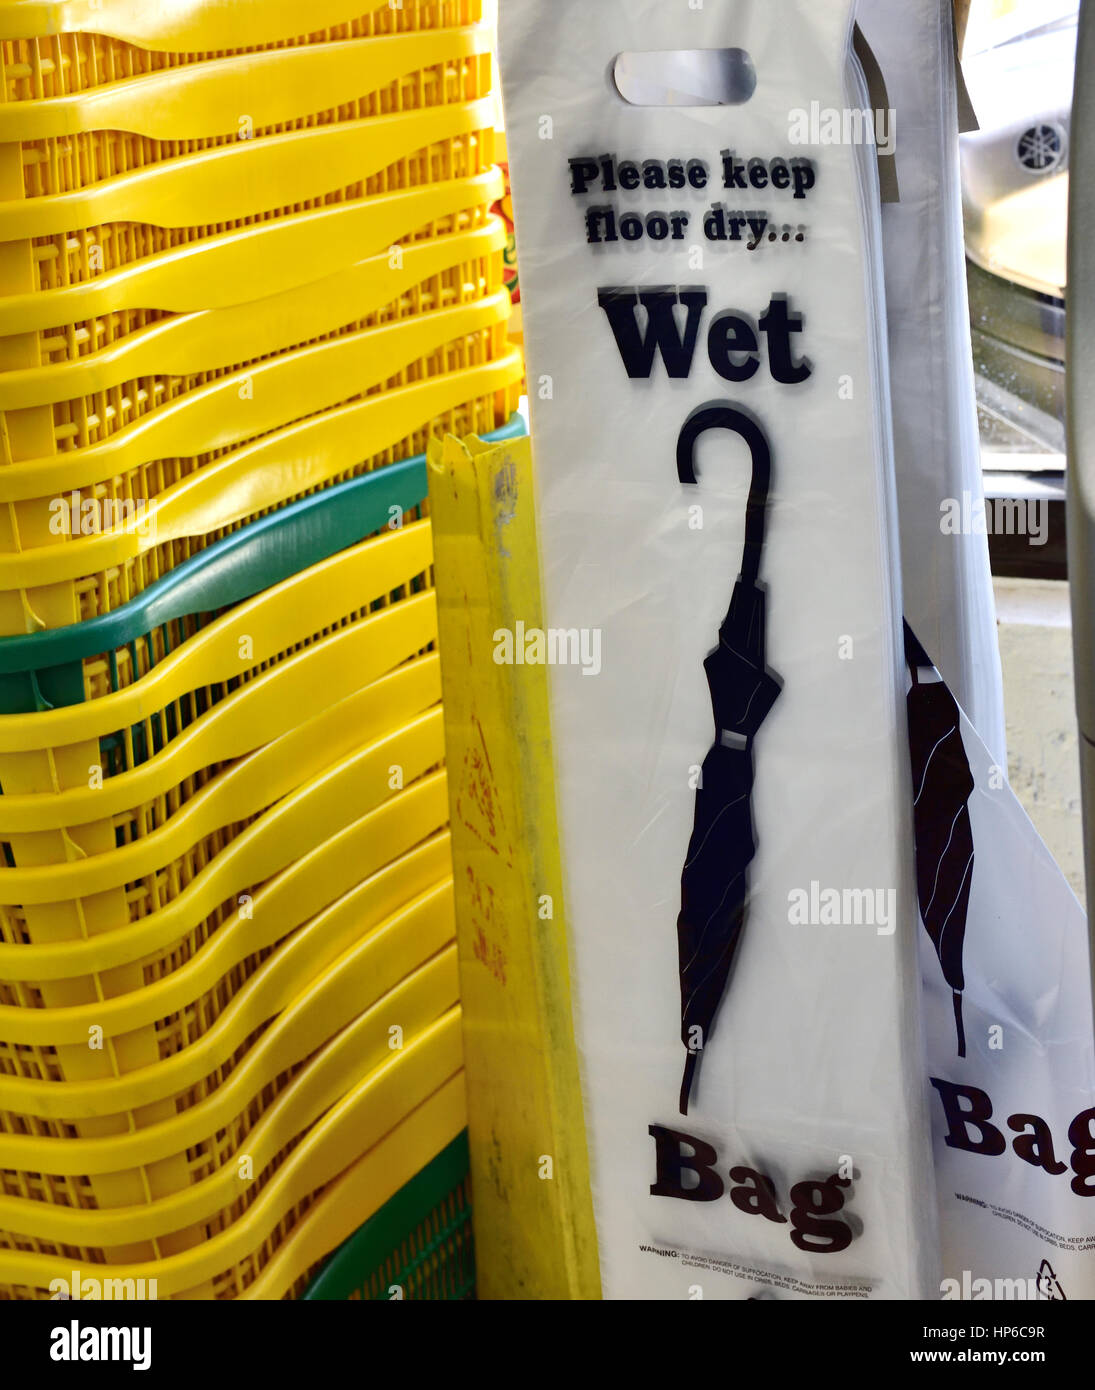 Buttare via i sacchetti di plastica per wet ombrelloni disponibili in negozio per mantenere asciutto il pavimento Foto Stock